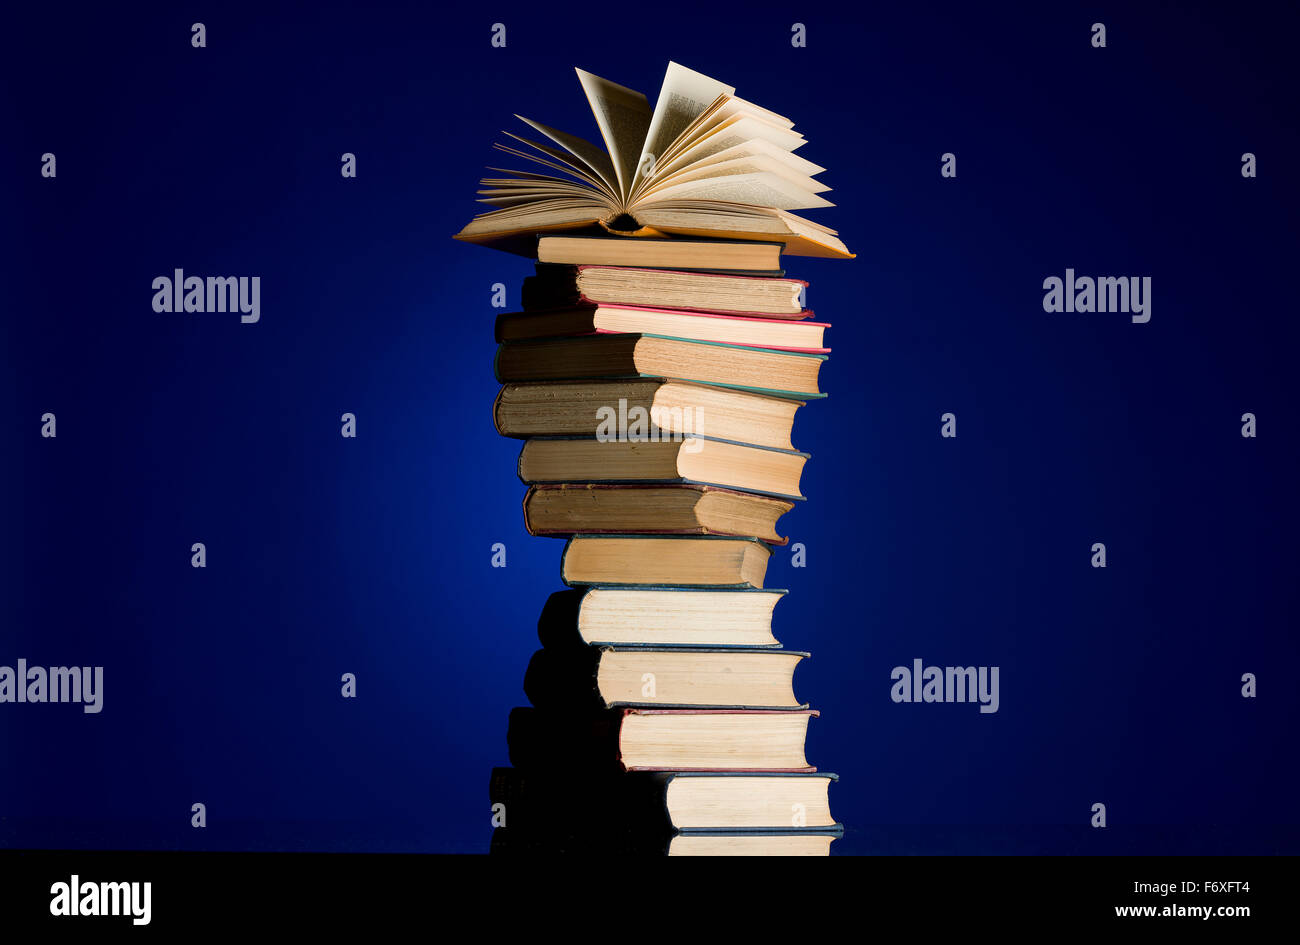 Stapel alter Bücher in eine Spirale drehen. Offenes Buch an die Spitze des Haufens. Büchersammlung. Lesen Sie, Bildung Metapher. Stockfoto